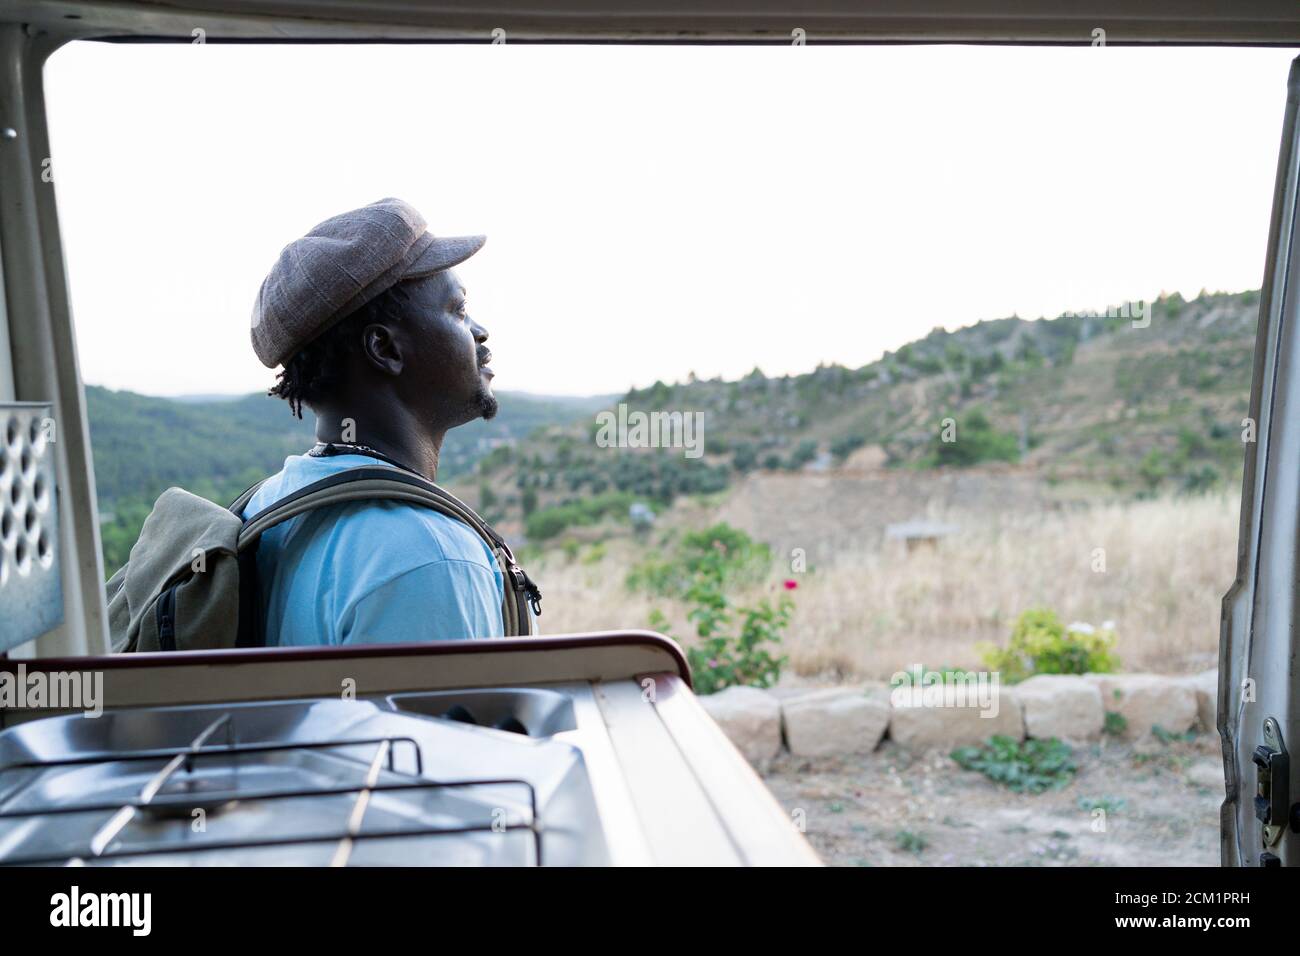 homme américain d'afrique noire avec sac à dos vert, concept de voyage Banque D'Images